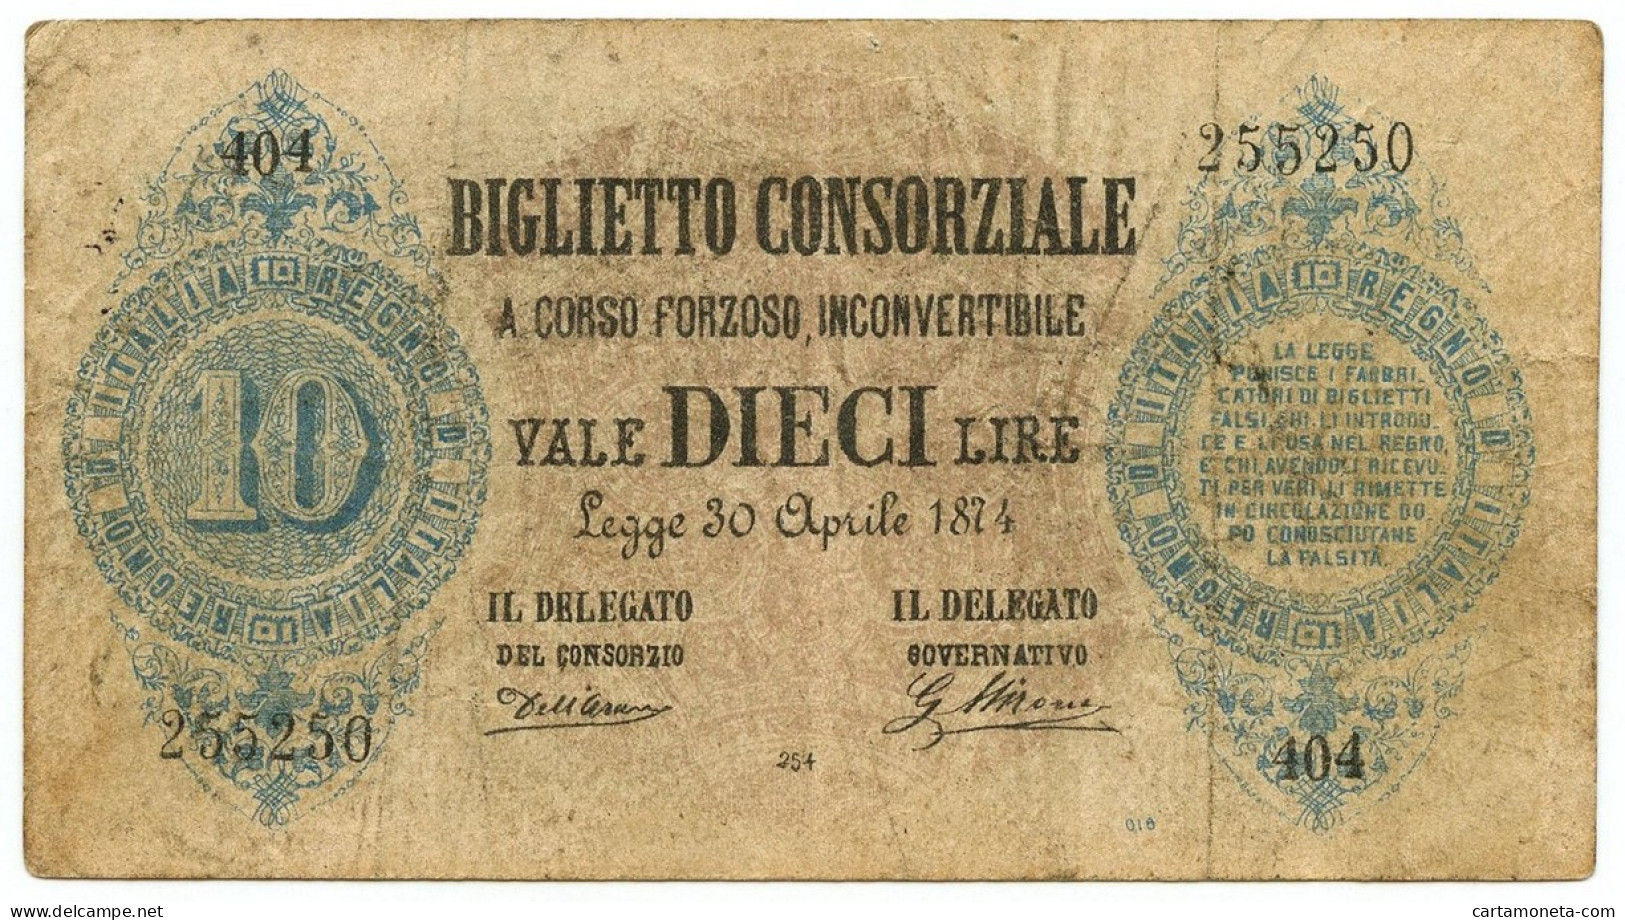 10 LIRE FALSO D'EPOCA BIGLIETTO CONSORZIALE REGNO D'ITALIA 30/04/1874 BB - [ 8] Vals En Specimen